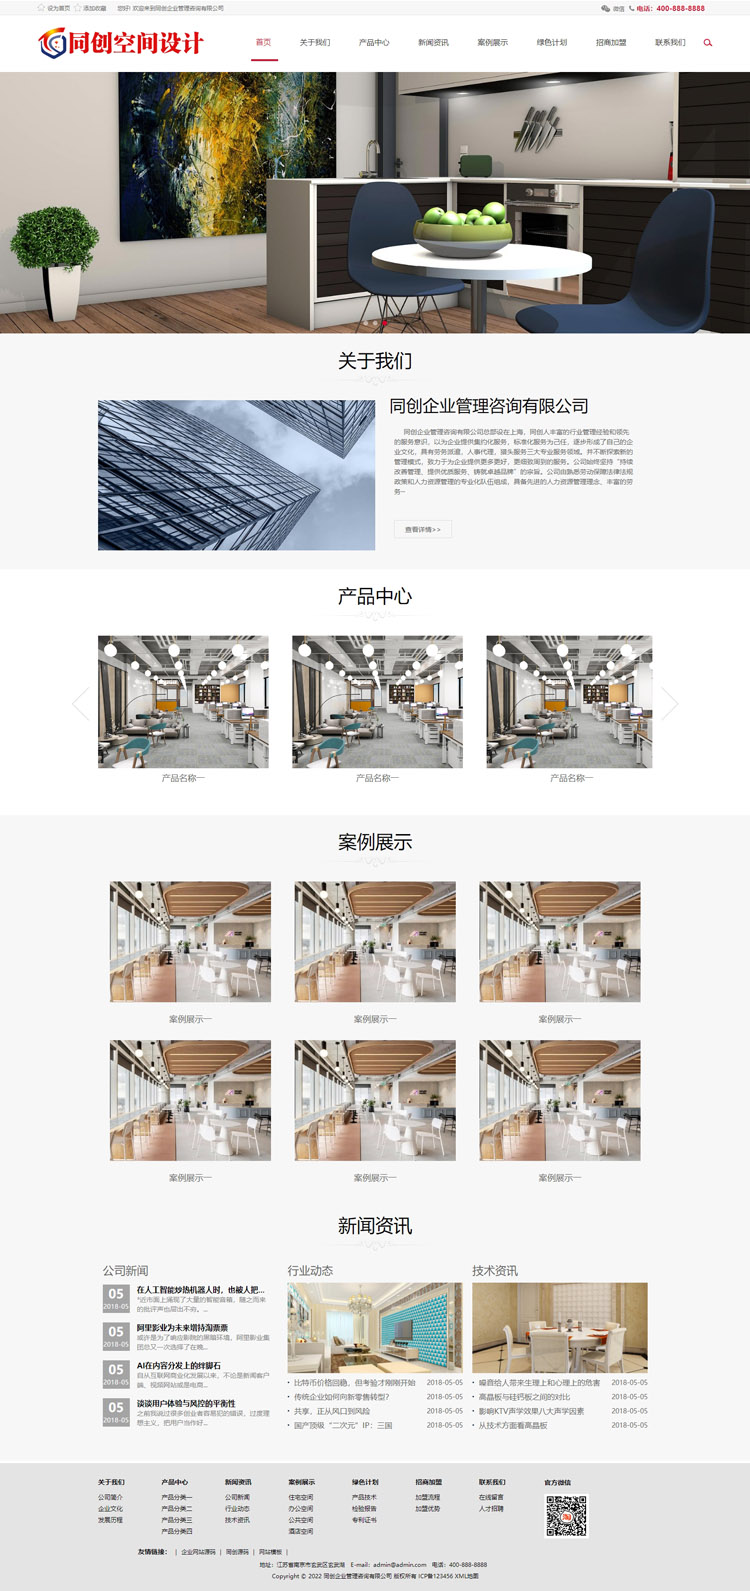 响应式建筑装饰工程网站模板程序-XX223-2